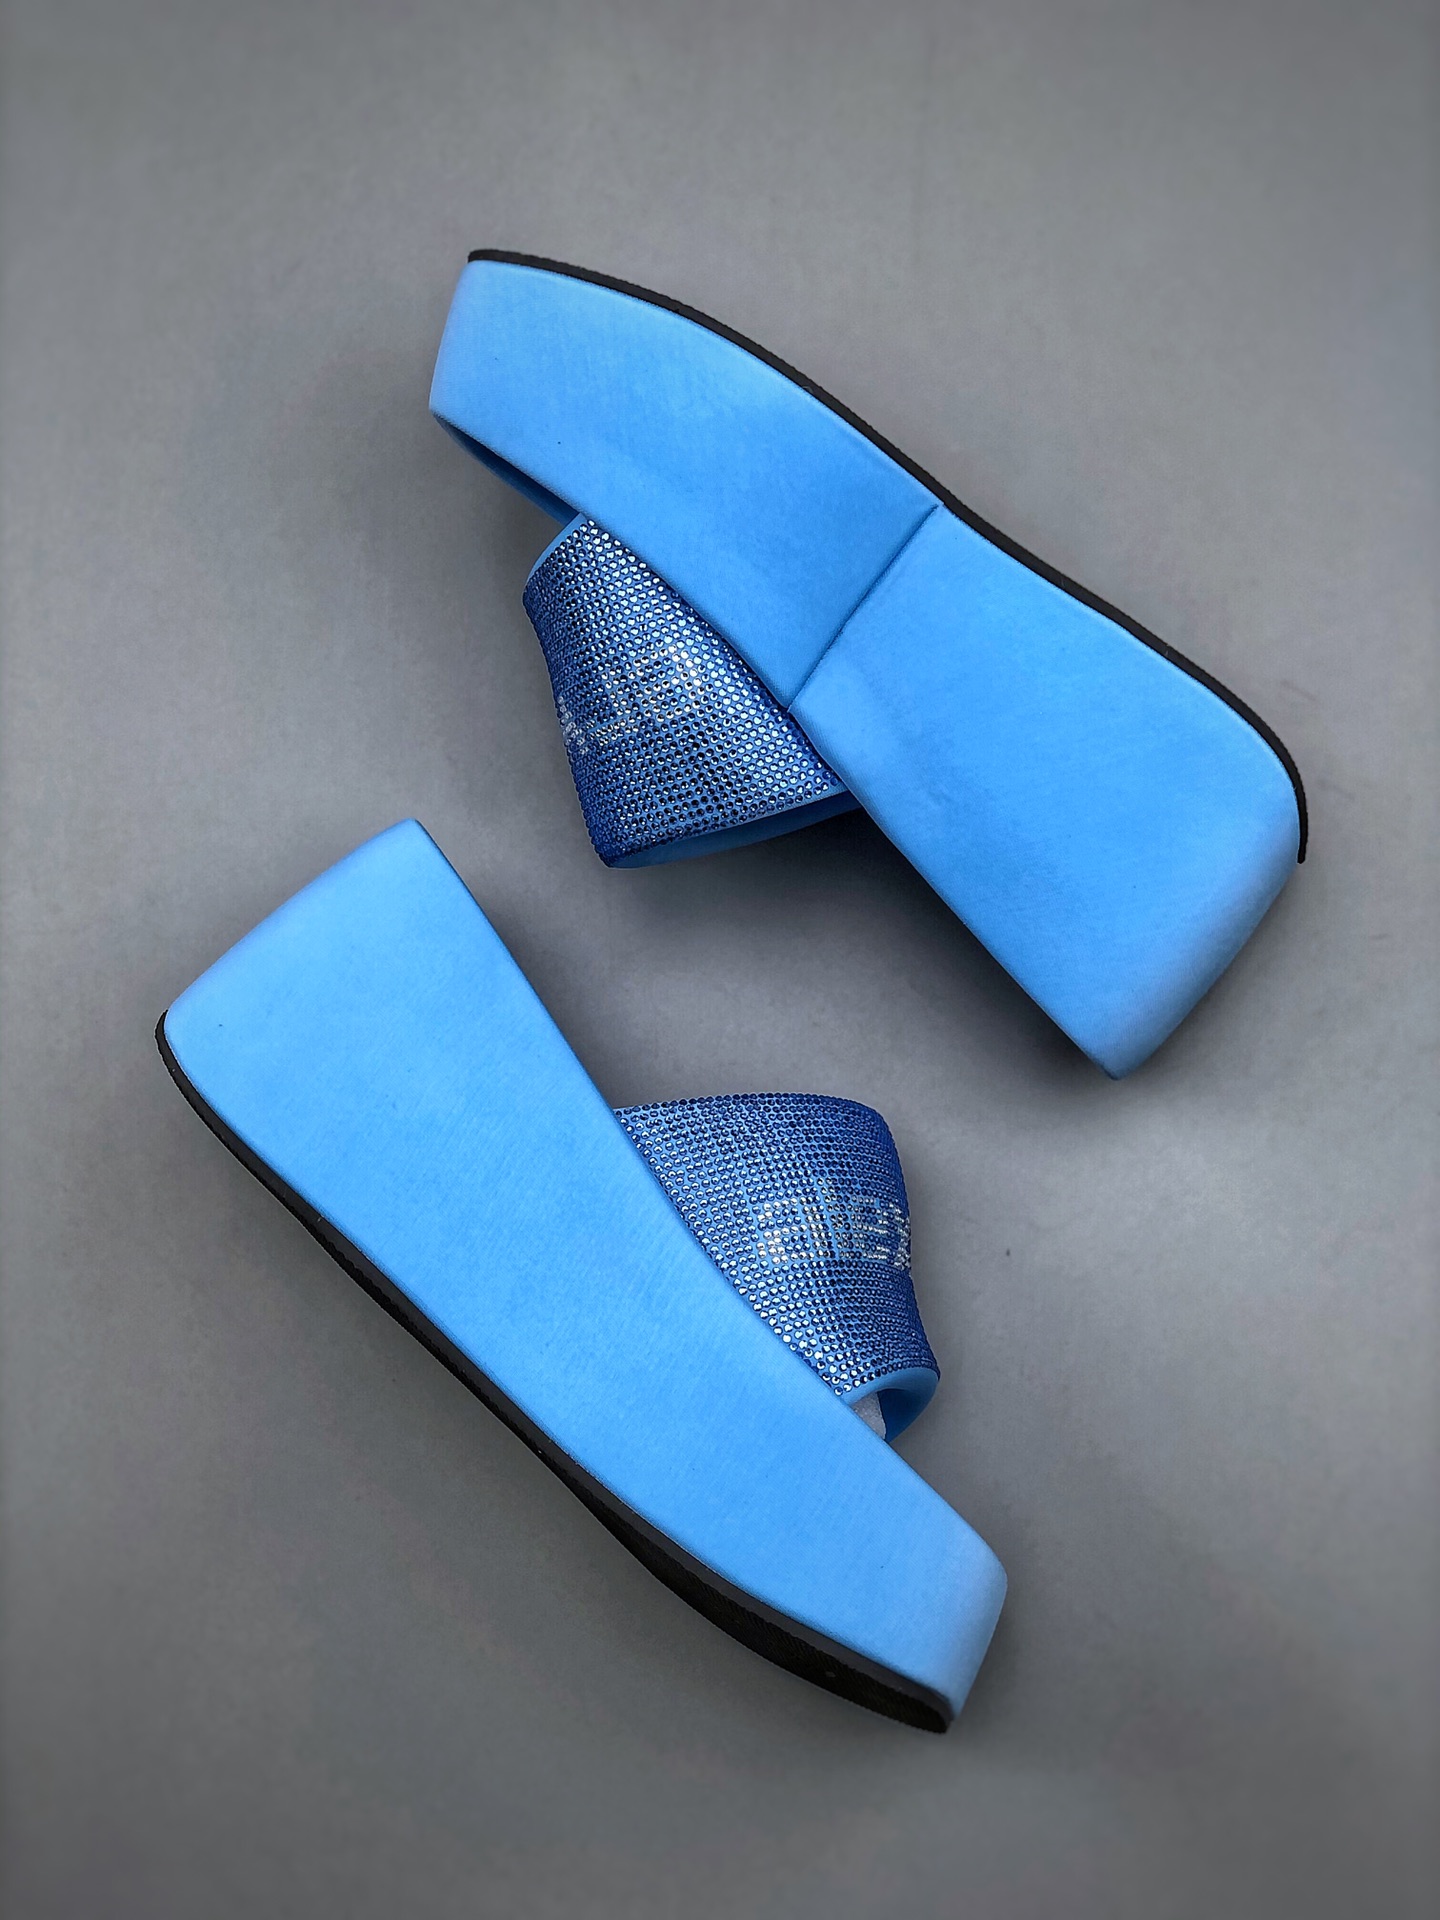 Alexander wang/Alexander Wang thick-soled slippers women's platform shoes flip-flops increase beach sandals